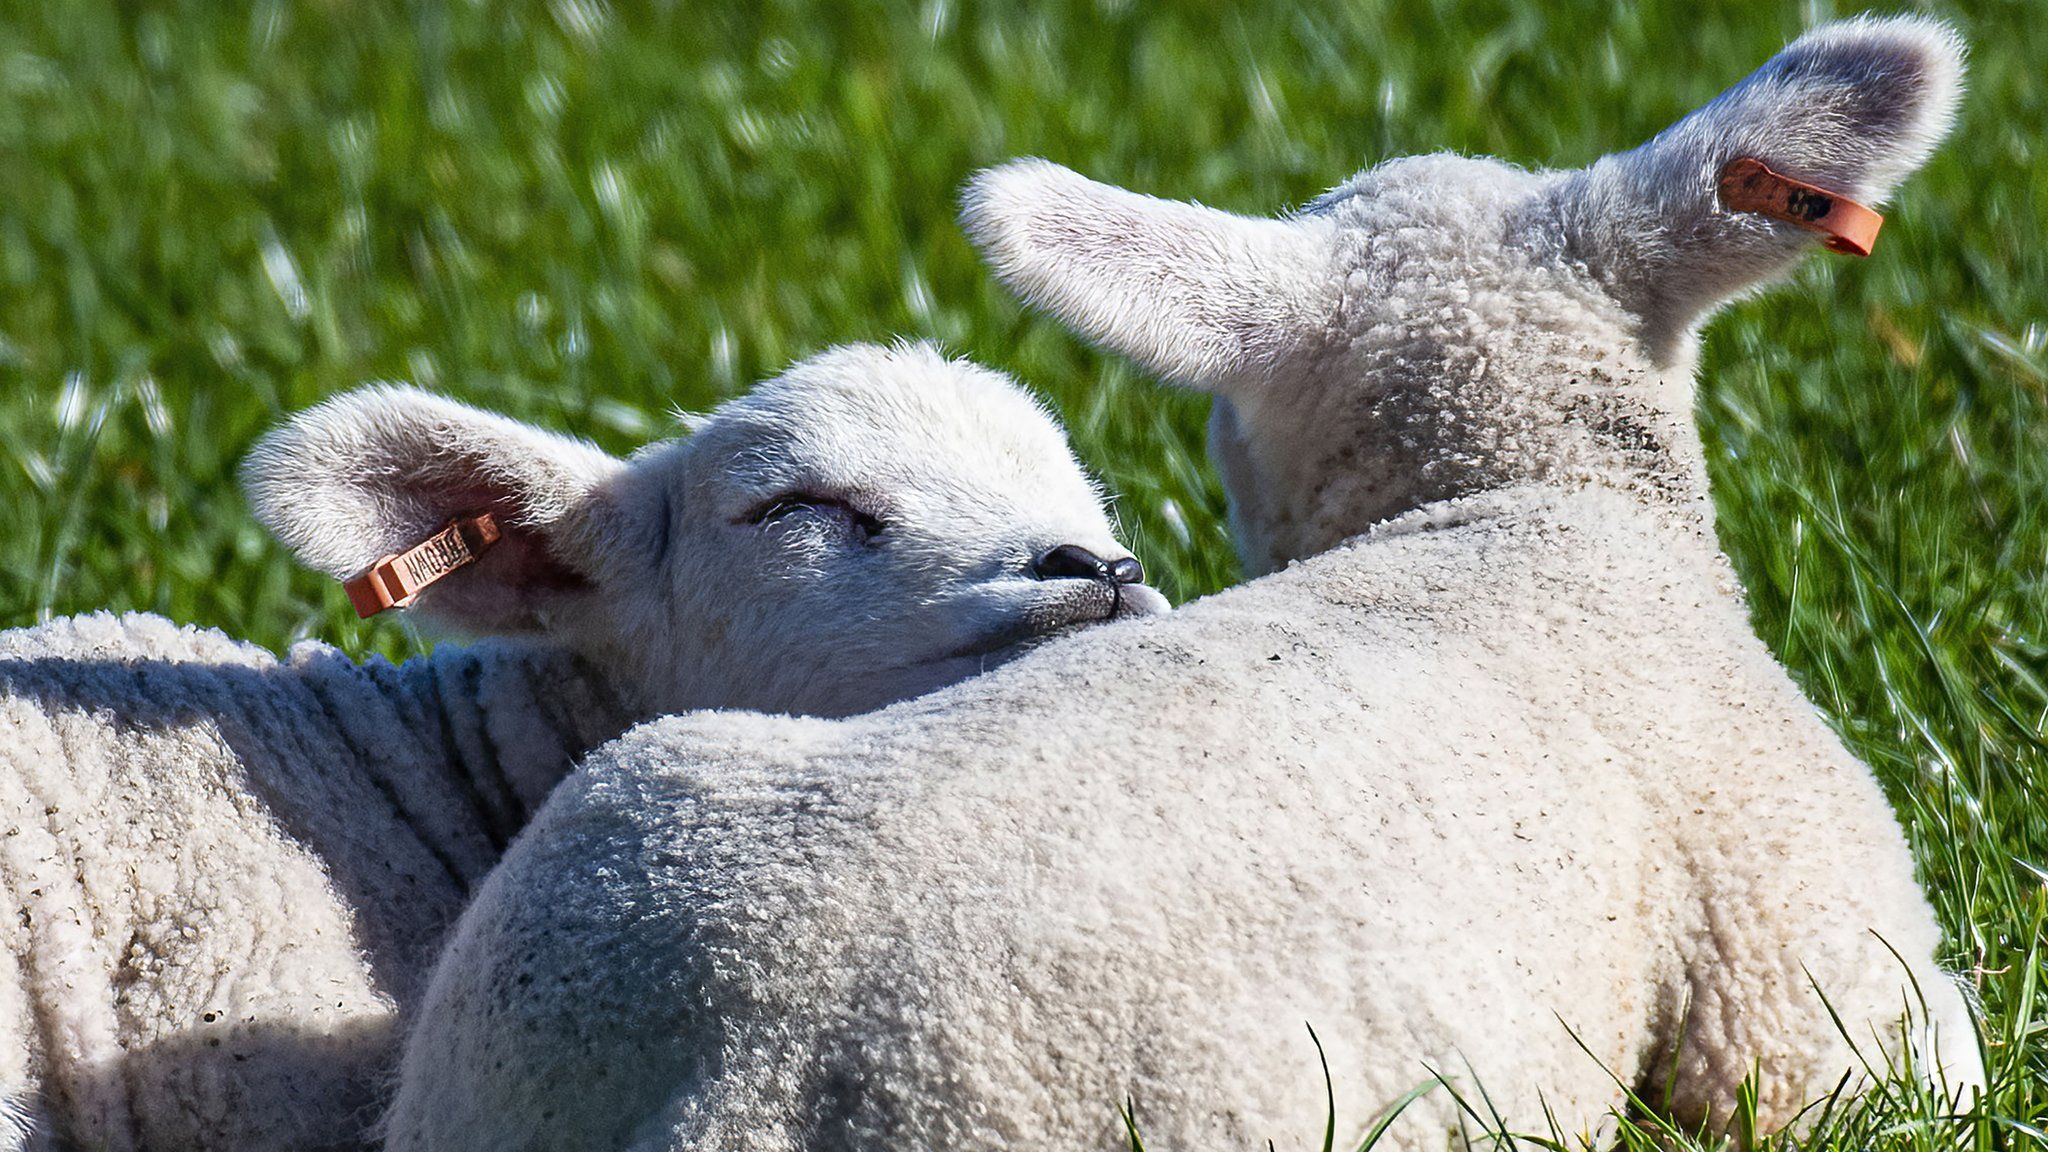 Lambs in Reeth